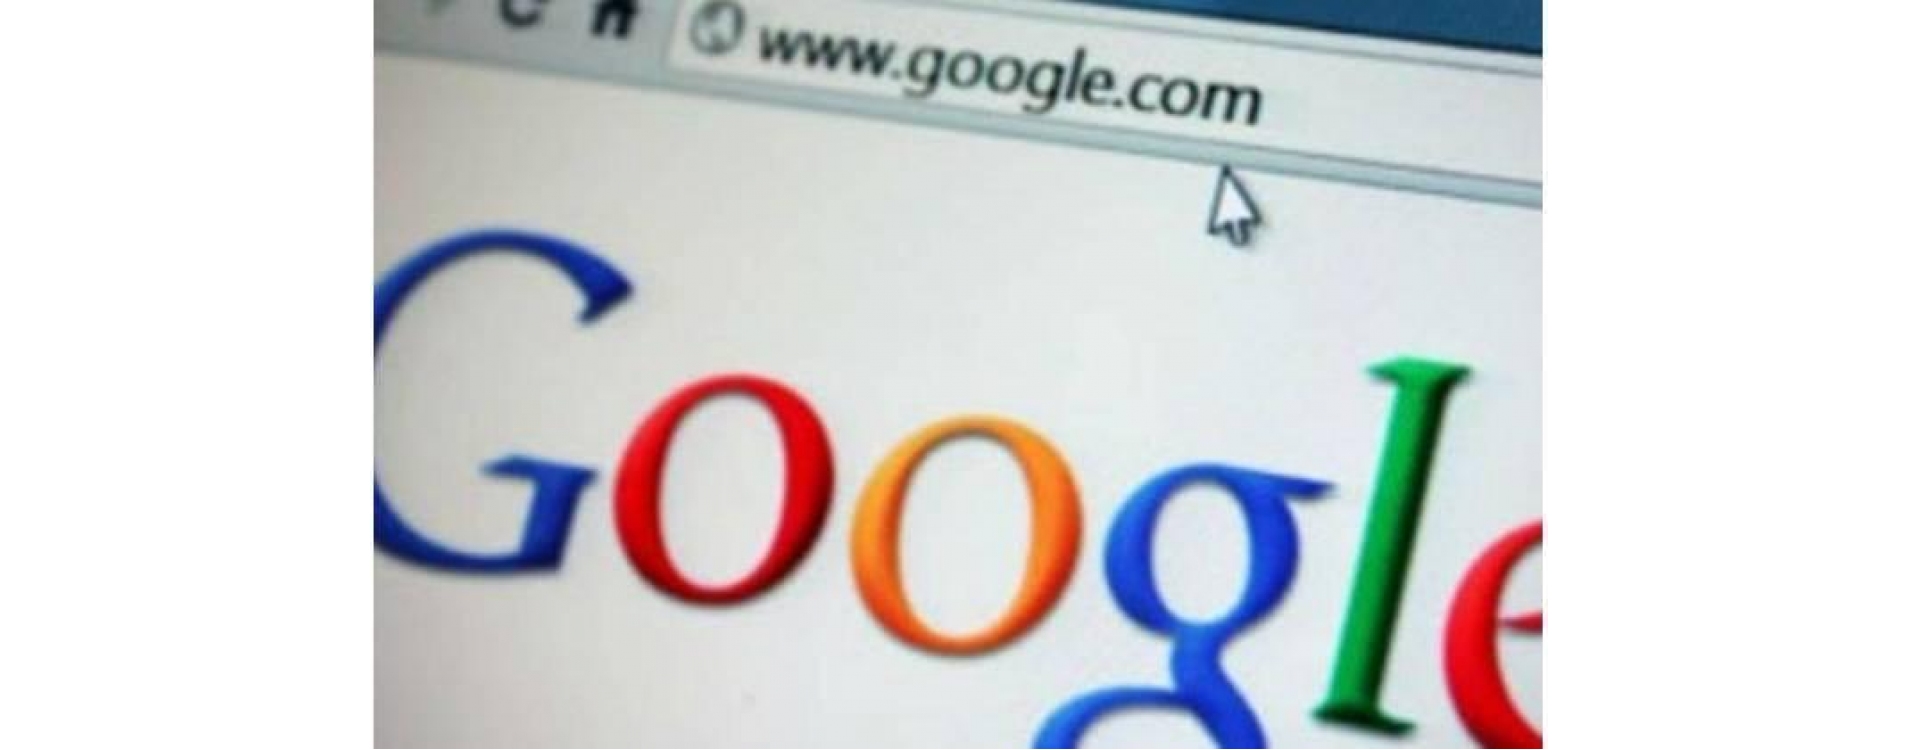 Google força usuários a migrar para navegadores 